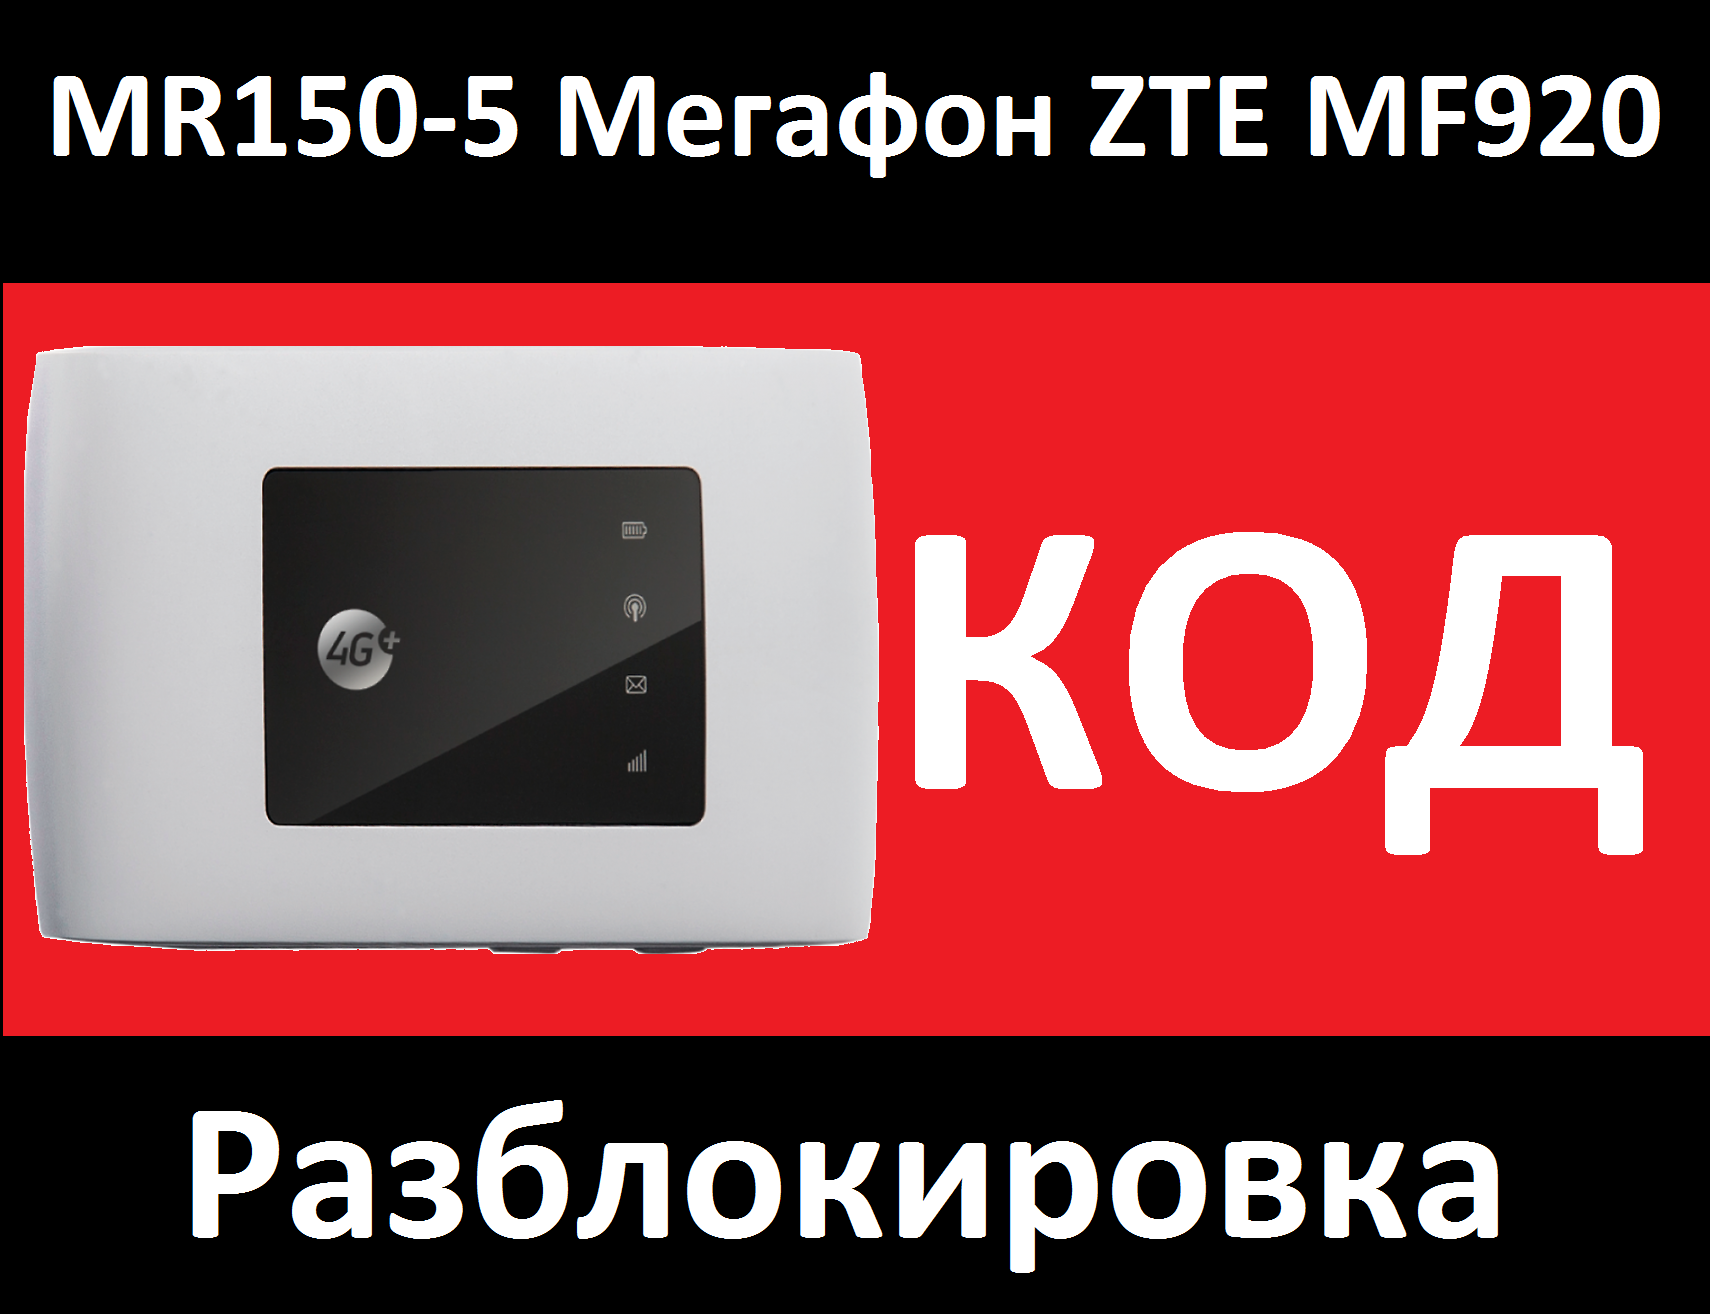 ZTE MF920, Мегафон MR150-5 разблокировка, код, разлочка